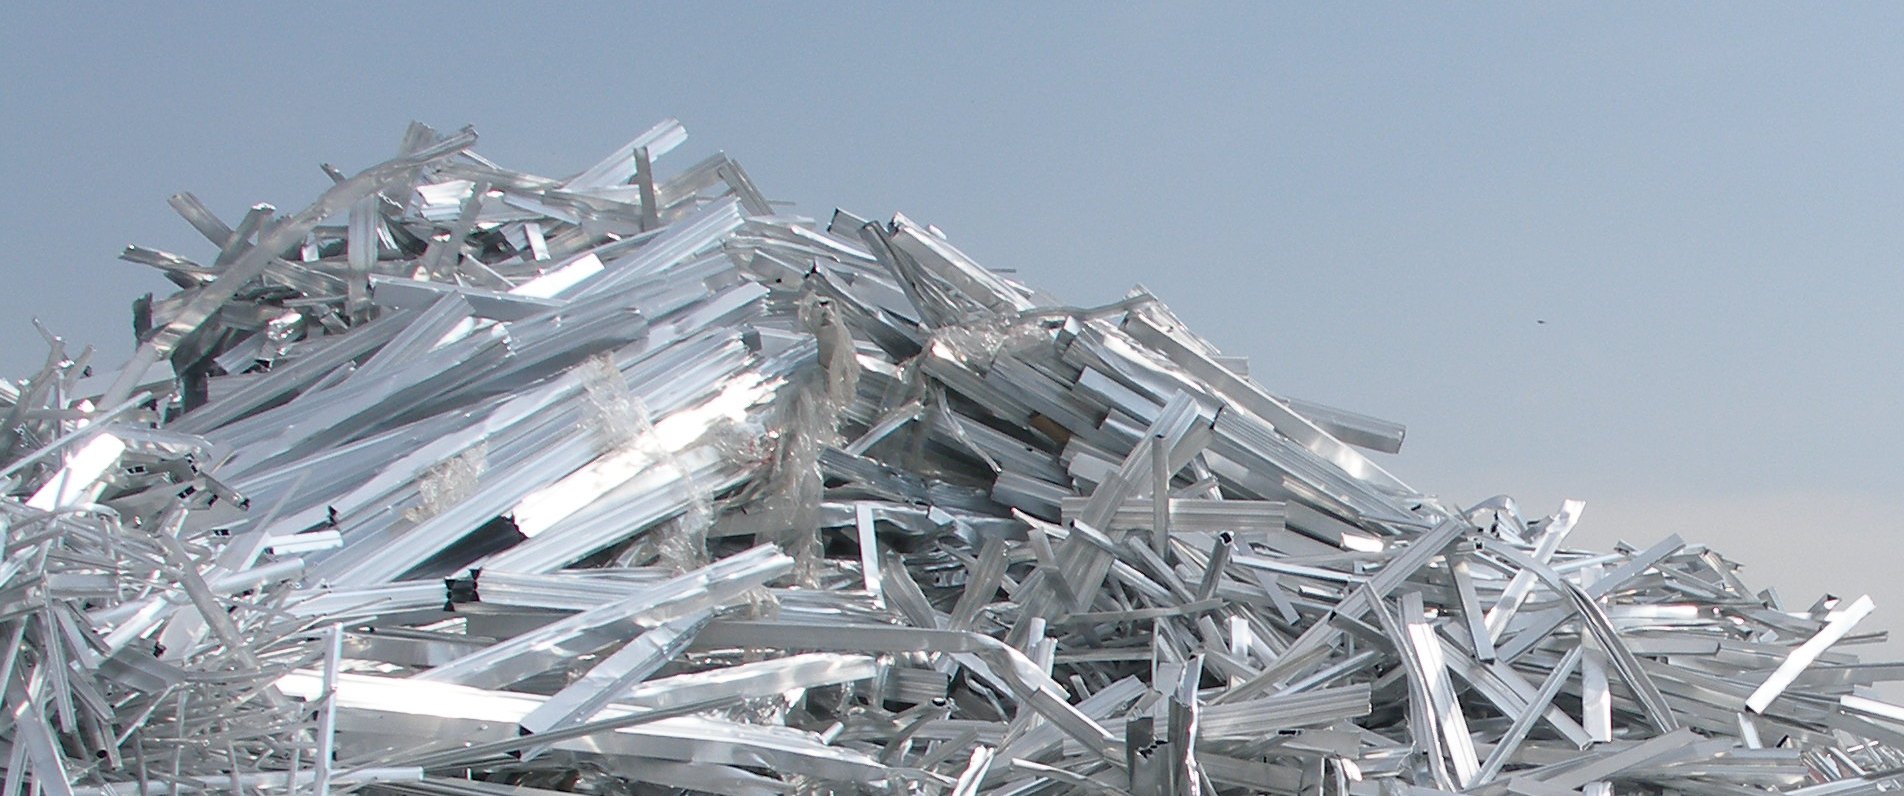 WBMS: за 7 месяцев спрос на алюминий в мире вырос на 0,6%